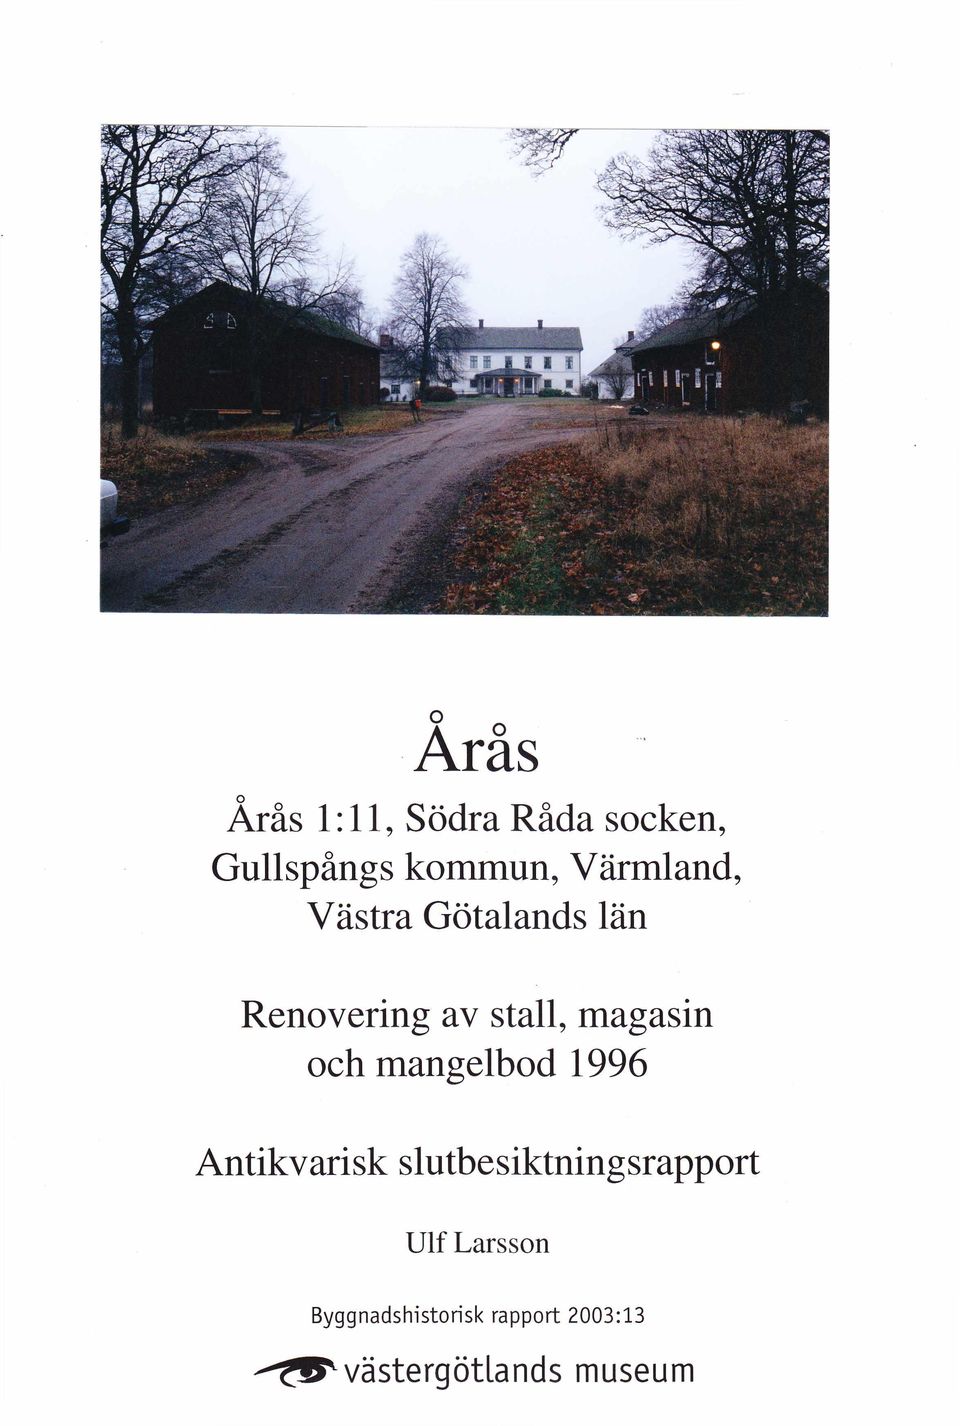 mangelbod 1996 Antikvarisk slutbesiktningsrapport Ulf